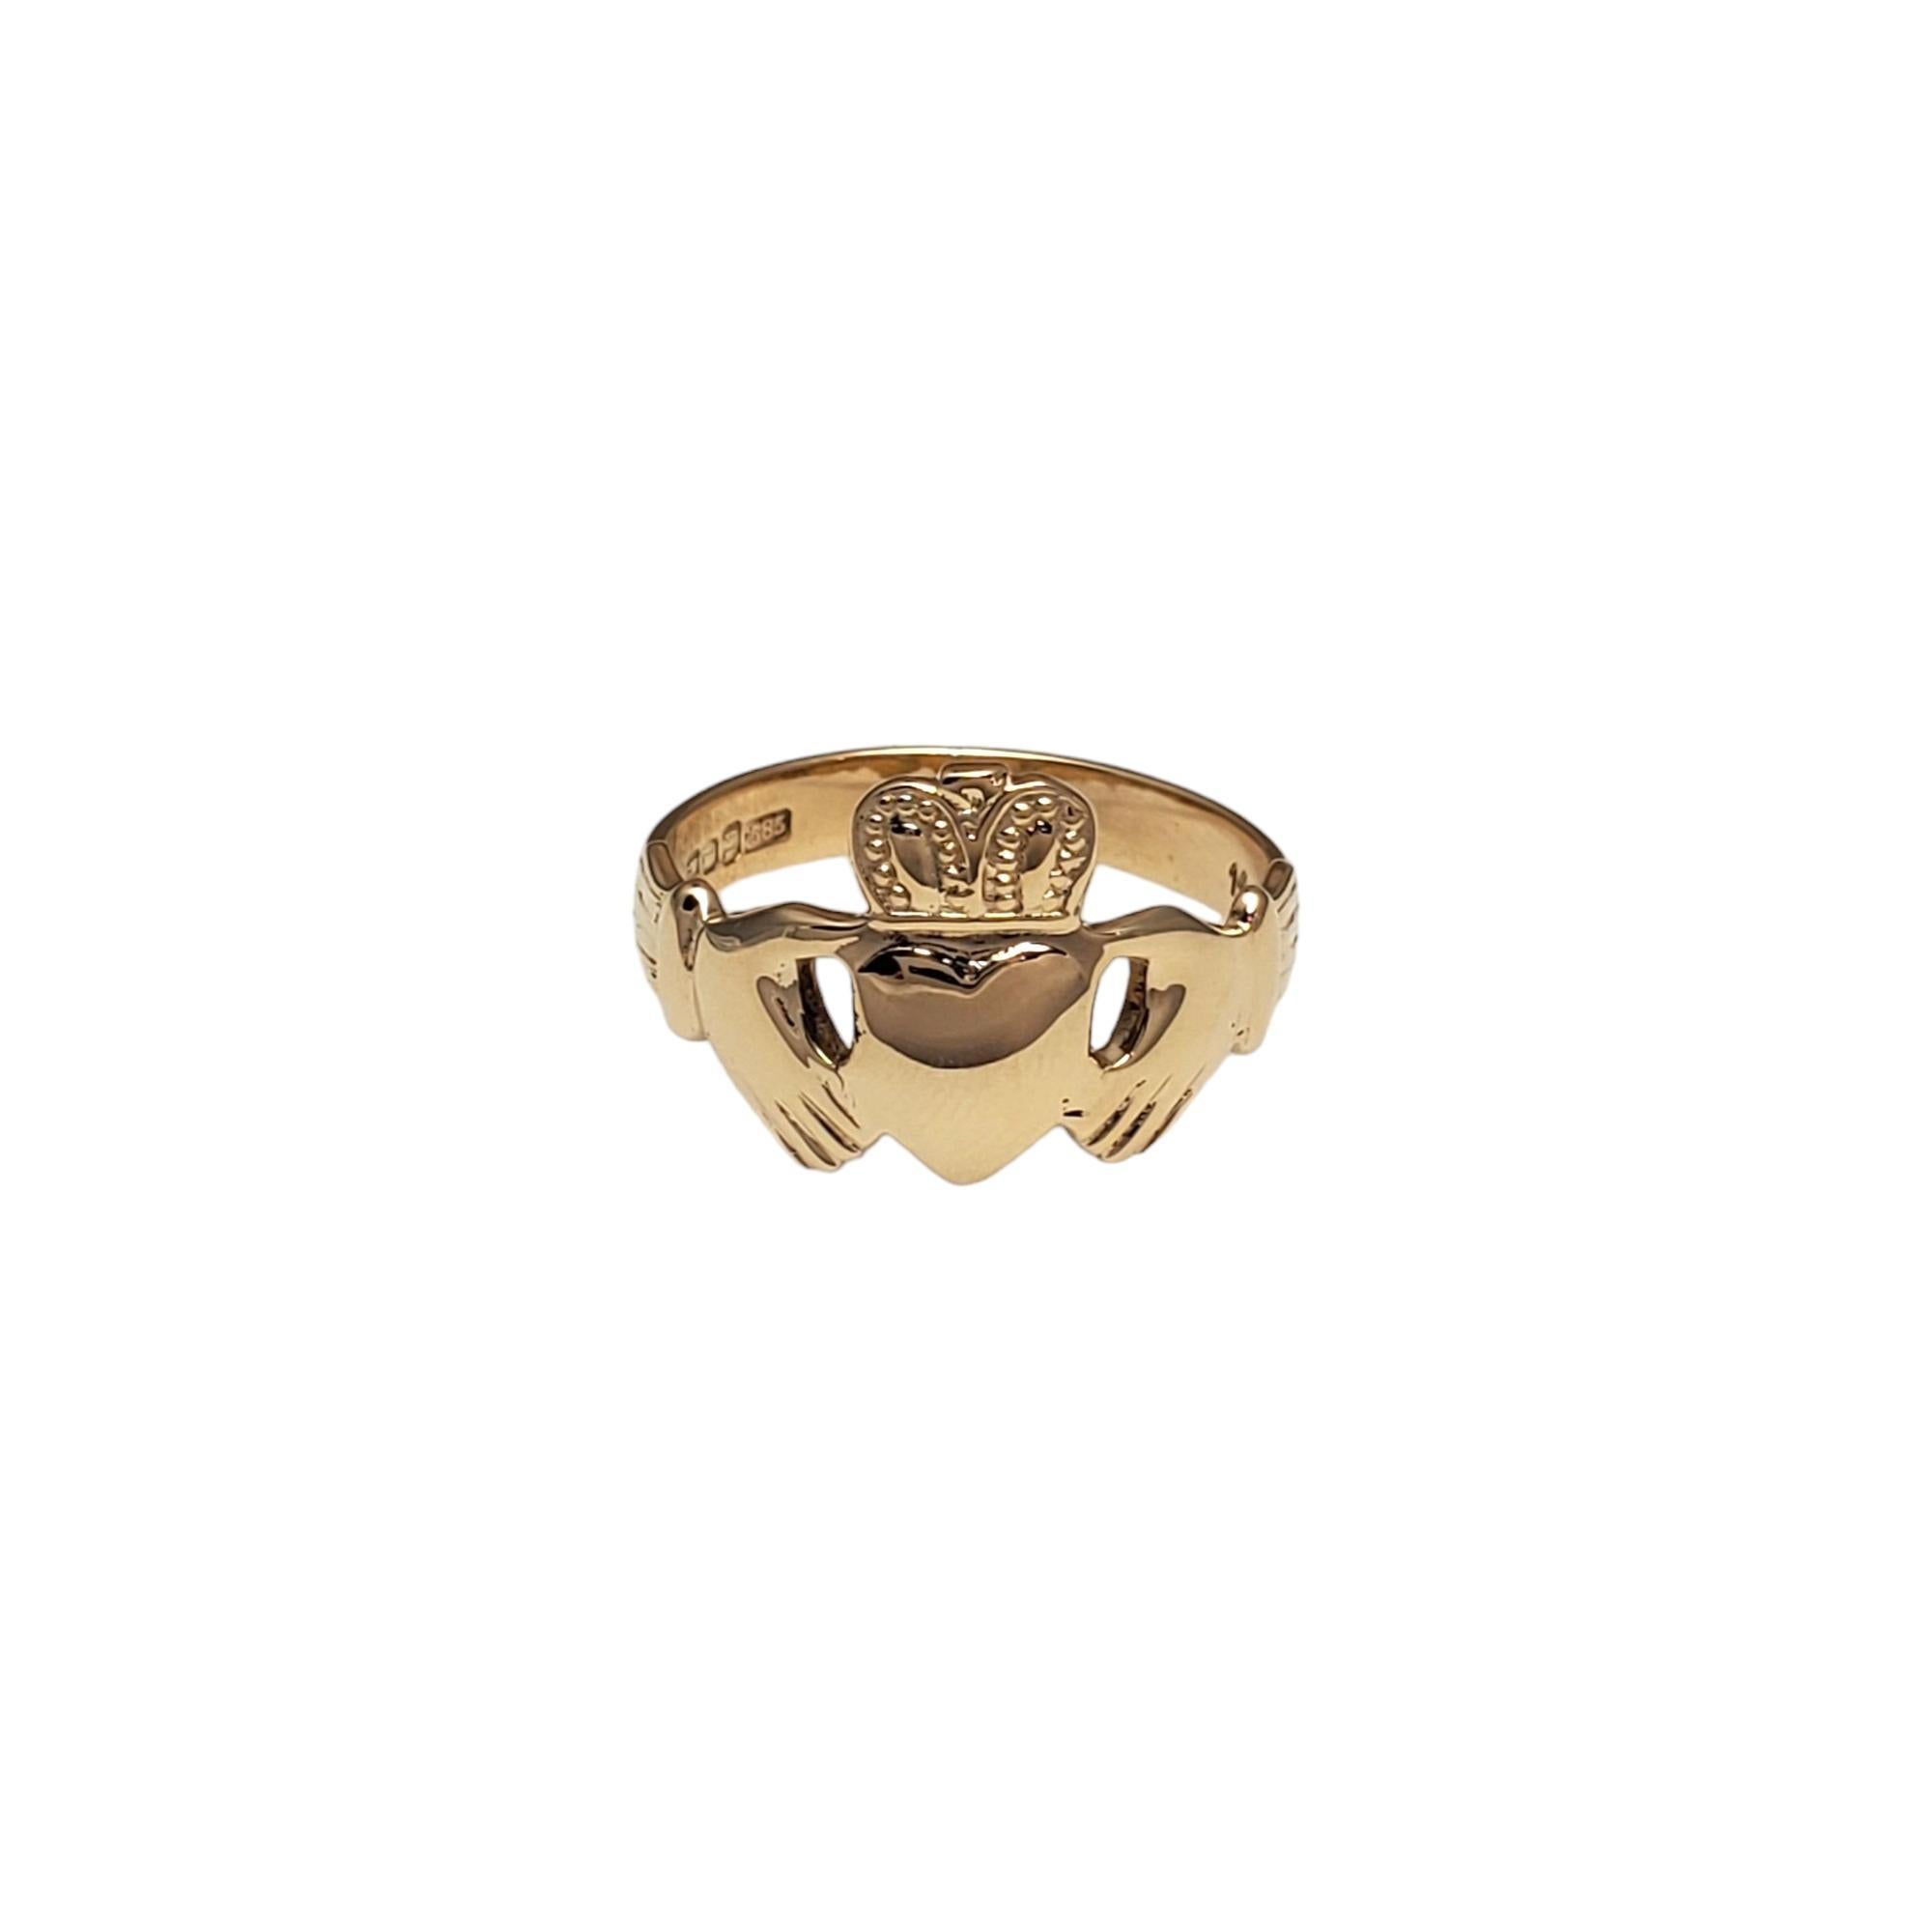 Vintage 14K Gelbgold Mann Claddagh Ring-

Dieser klassische Claddagh-Ring ist ein eindrucksvolles Symbol der irischen Kultur. 

Größe:  9.75

Gewicht:  3,9 dwt./  6.2 gr.

Gestempelt:  585 14CT O'C Hergestellt in Irland

Die Vorderseite des Rings